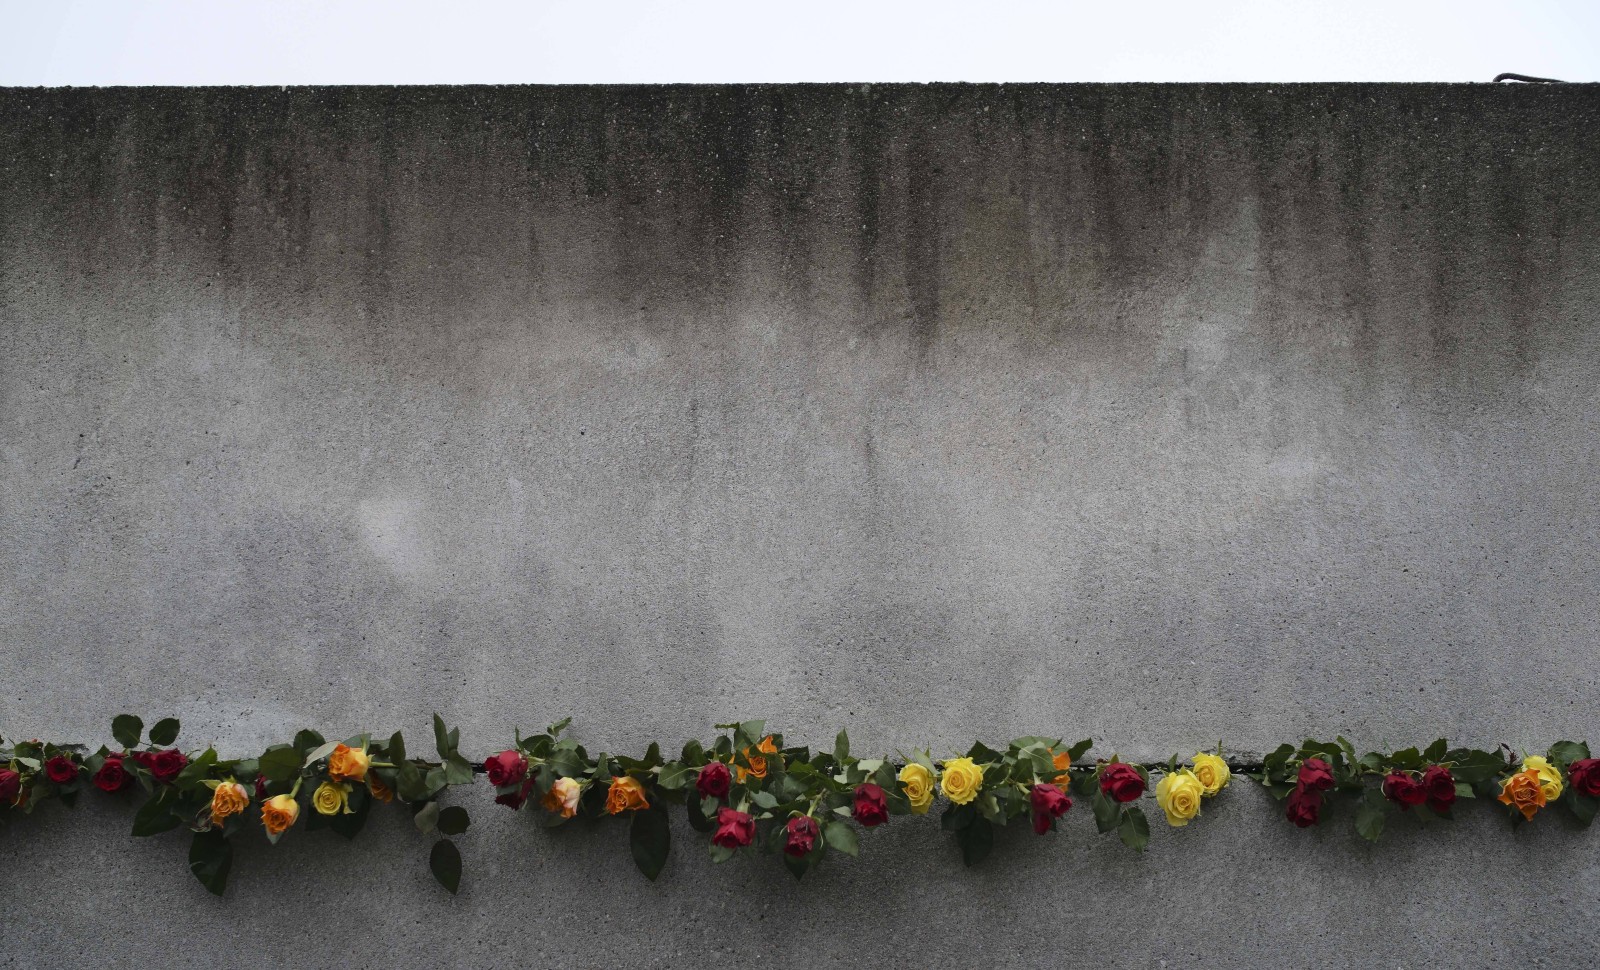 Anniversaire du mur de Berlin
© Markus Schreiber/AP/SIPA